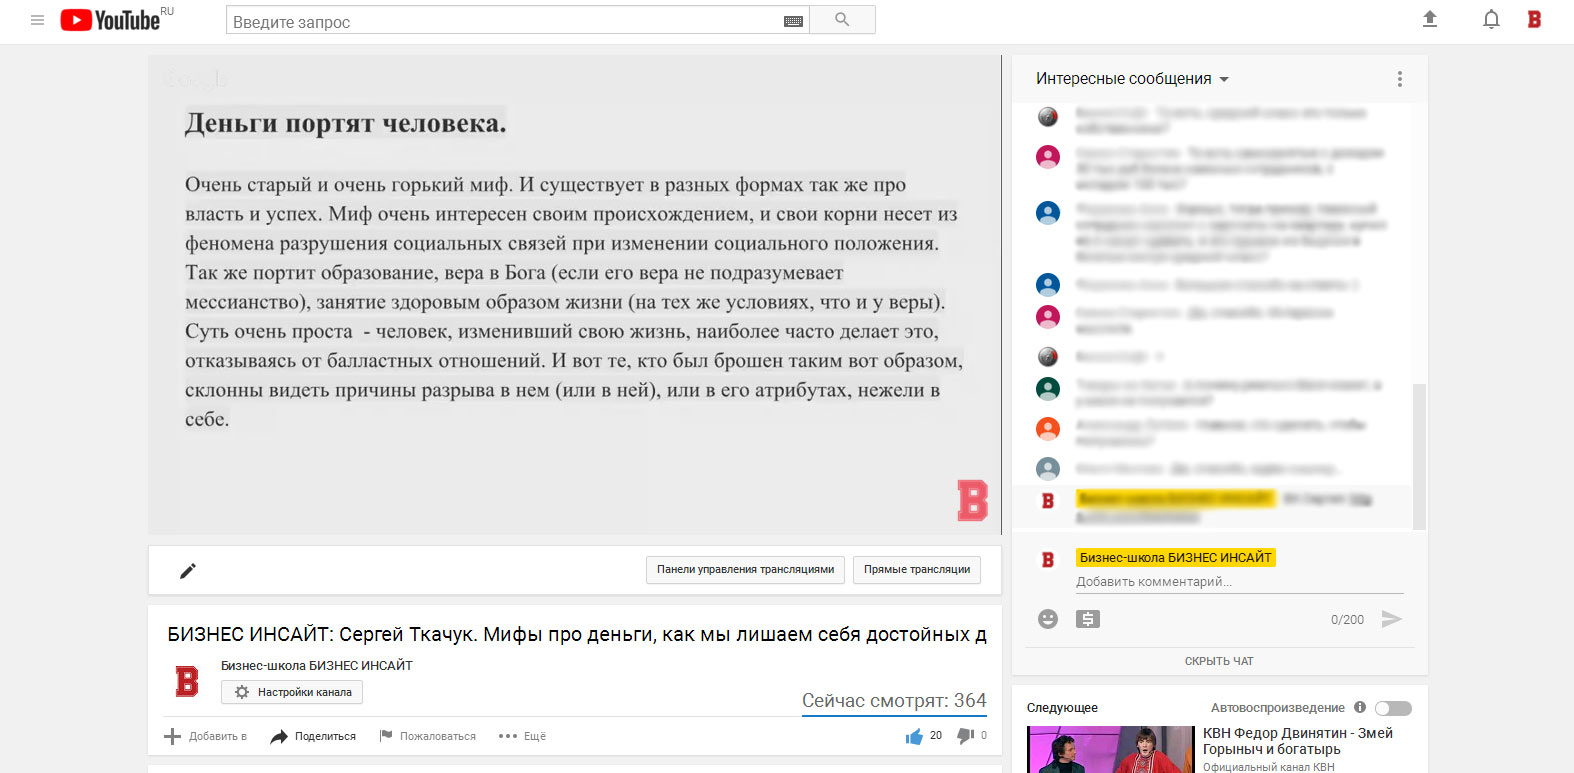 Сергей Ткачук провел открытый (бесплатный) вебинар на площадке БИЗНЕС ИНСАЙТ